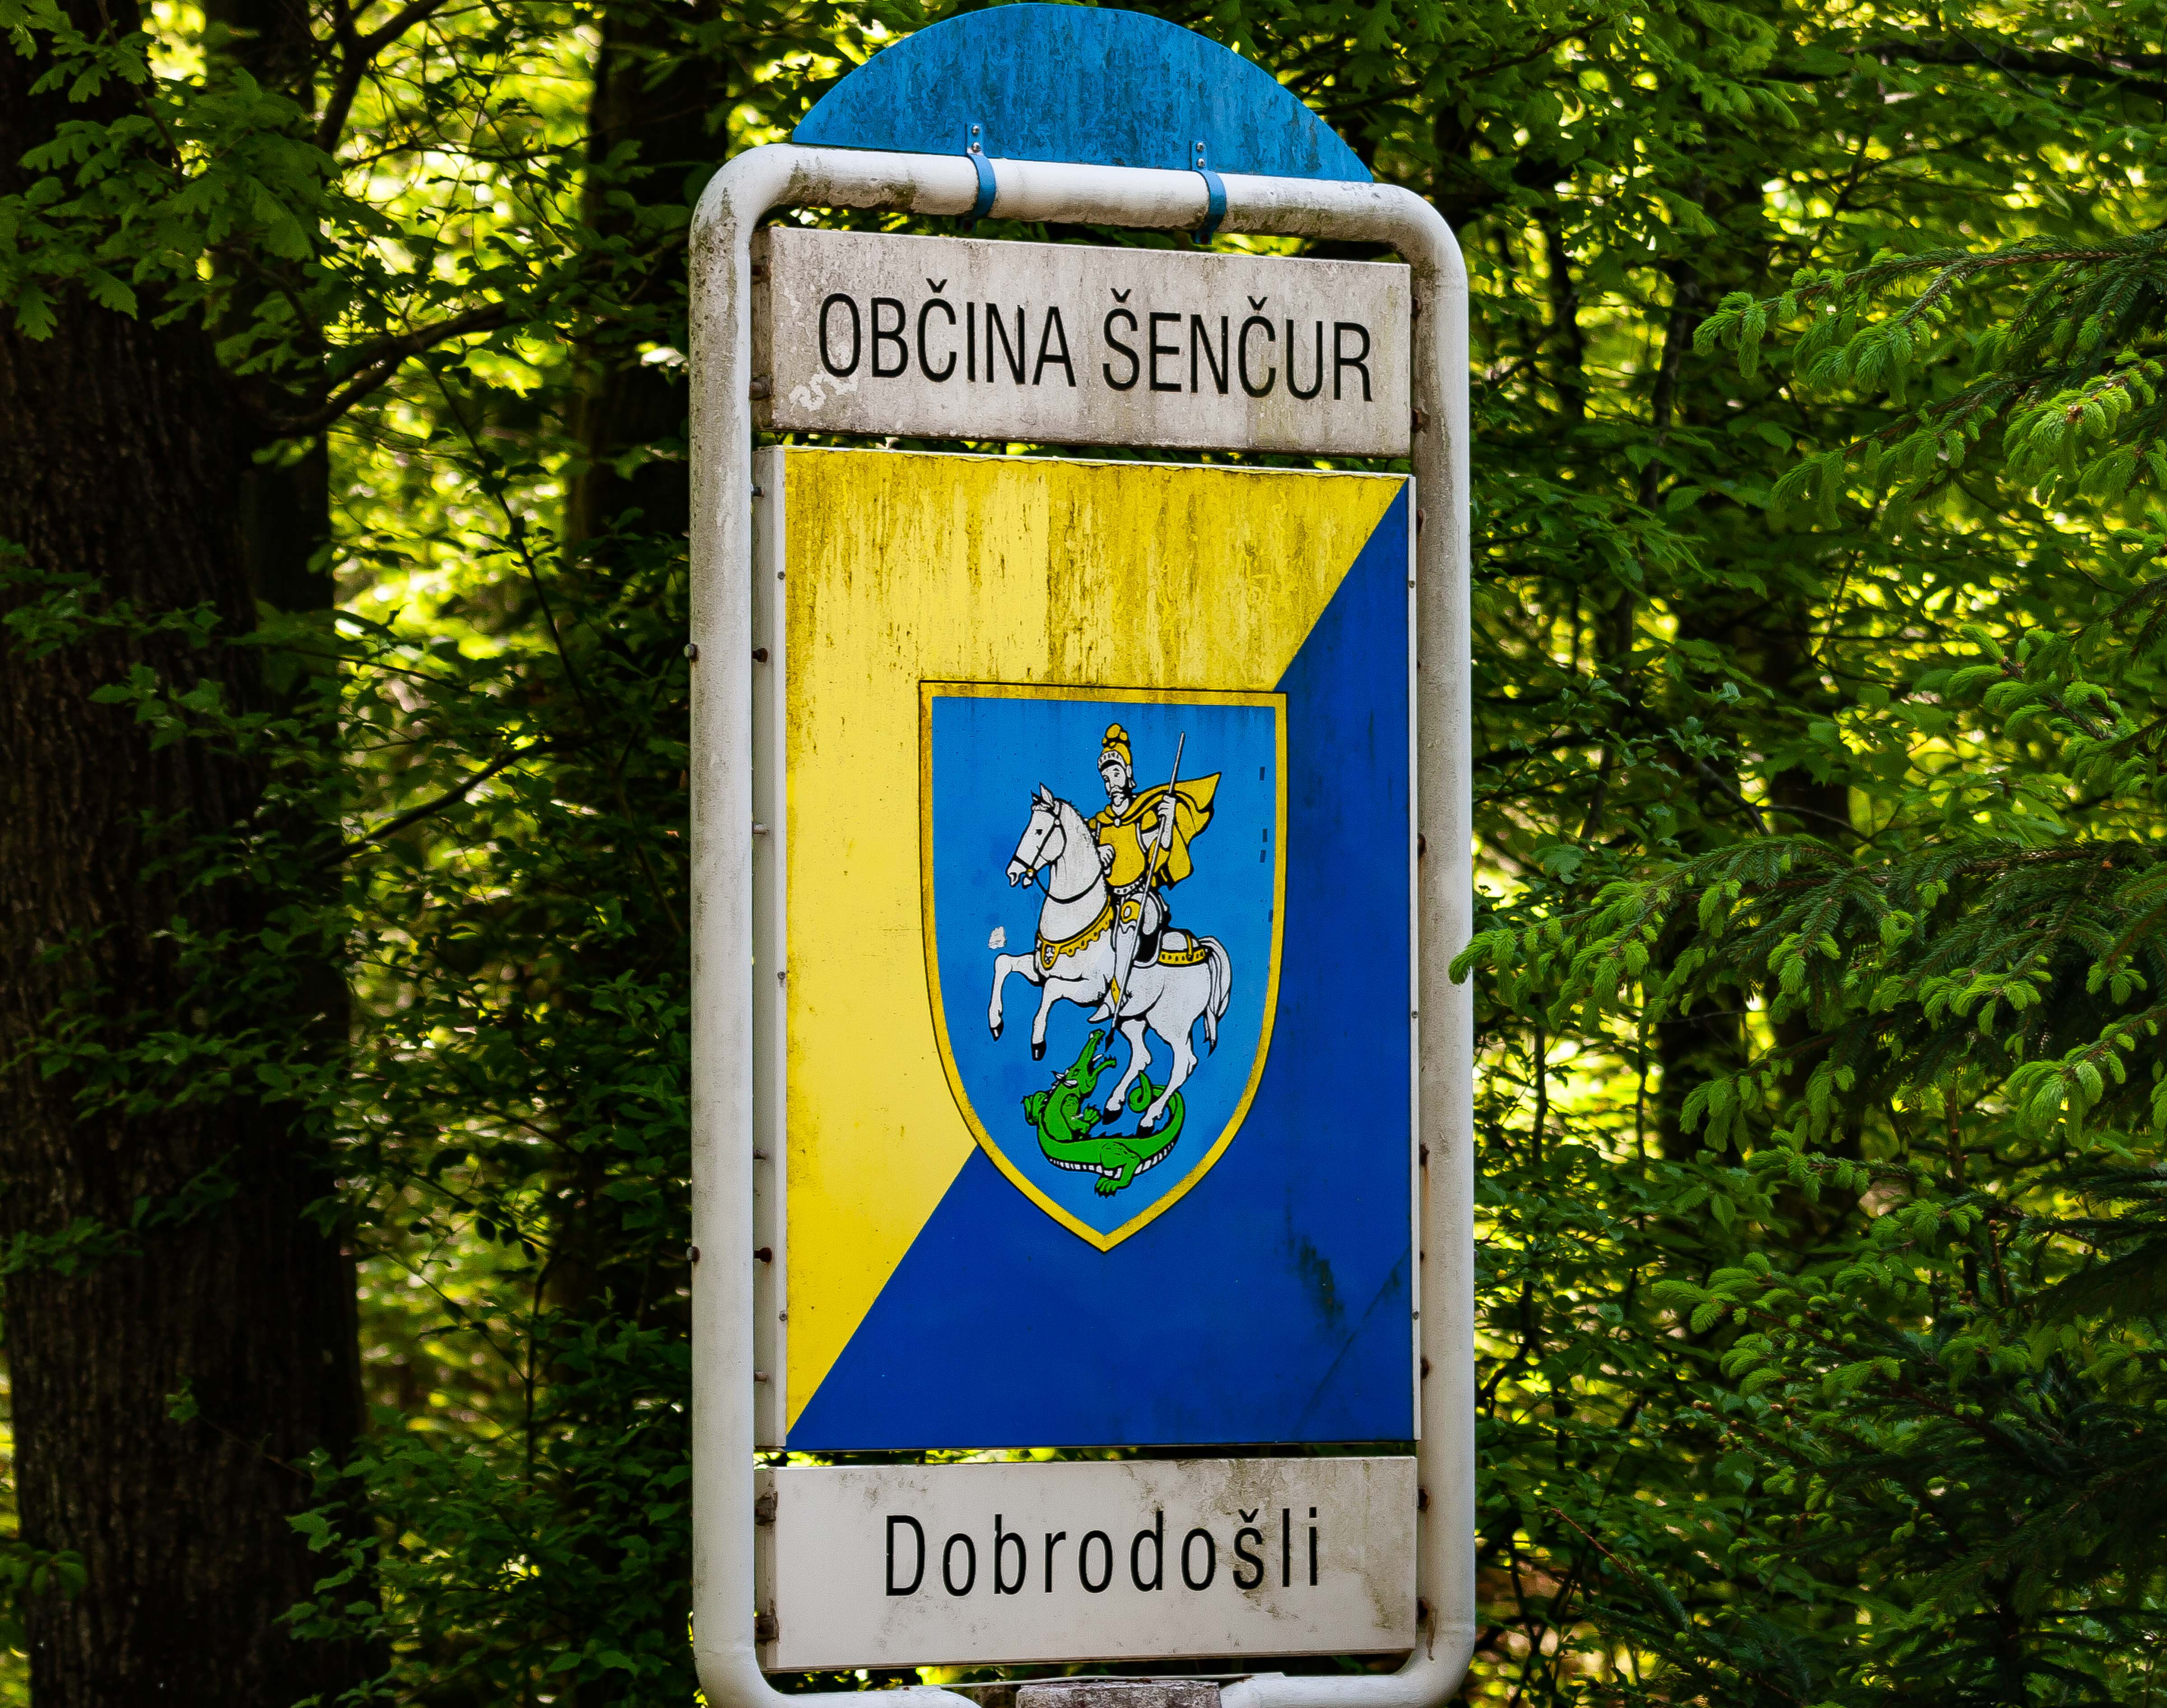 Slovenia, Sentjur Pri Celju Prov, Dobrodosli Obcina Sencur, 2006, IMG 5969